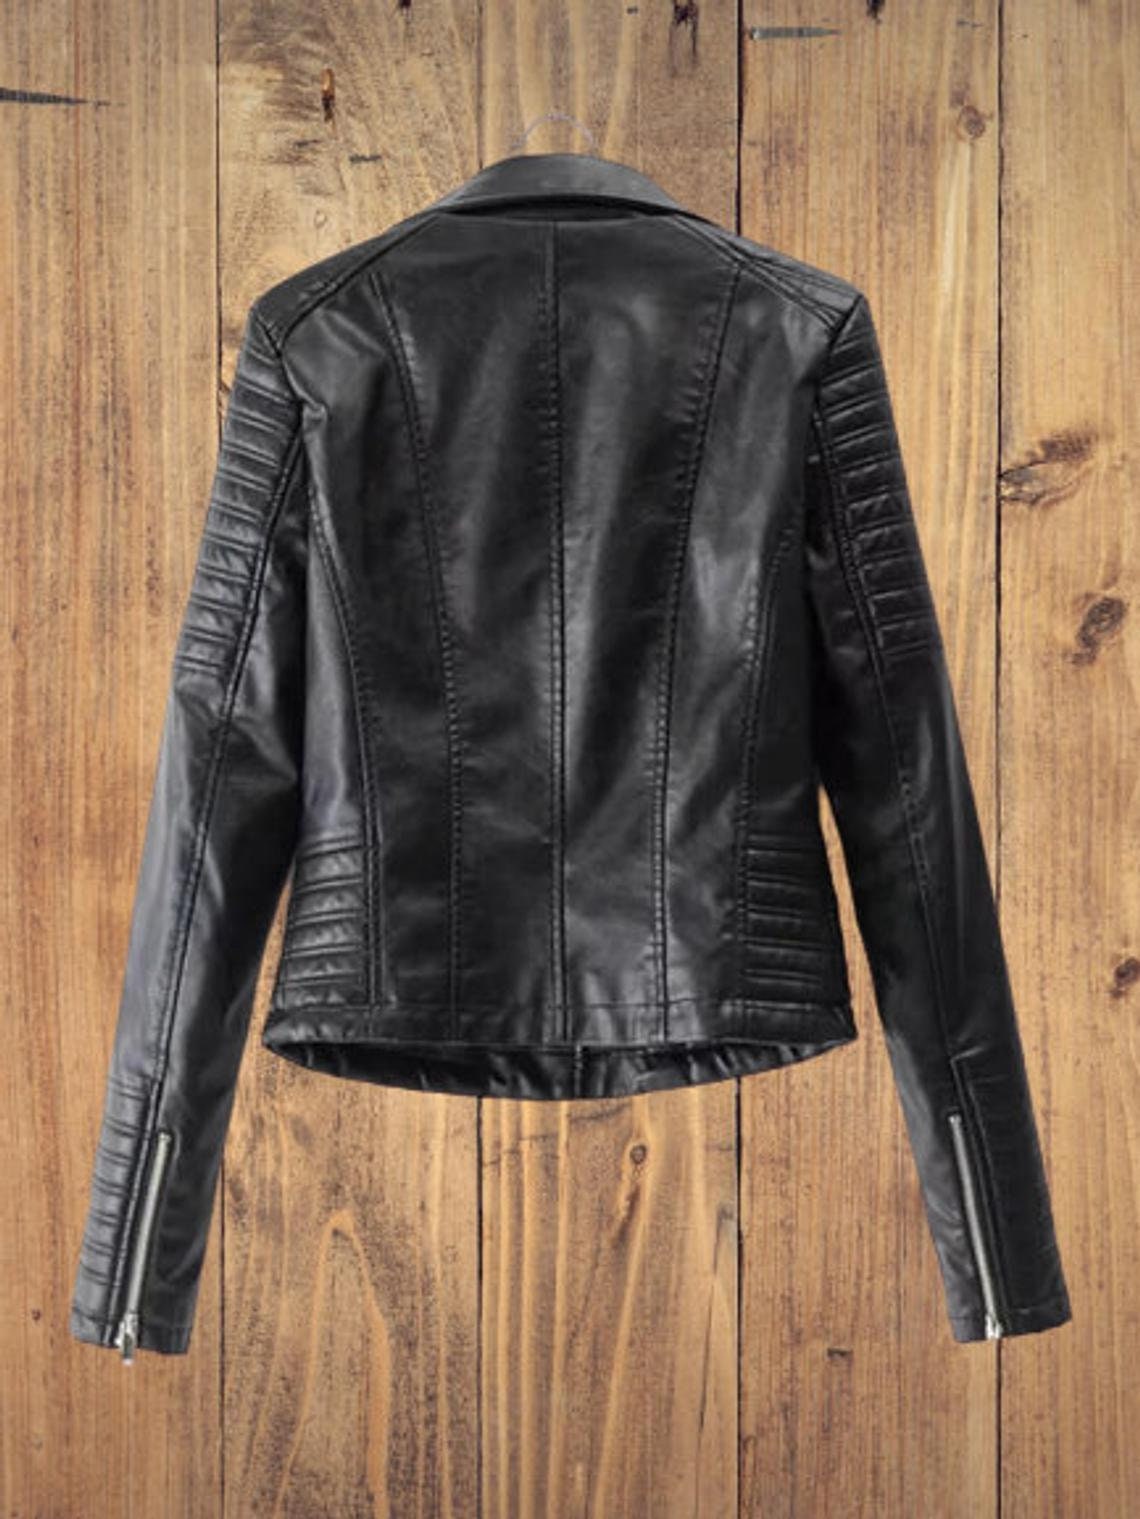 Leather Jacket For Women's Original Lambskin Soft Leather Jacket Slim Fit Designer Biker Jacket